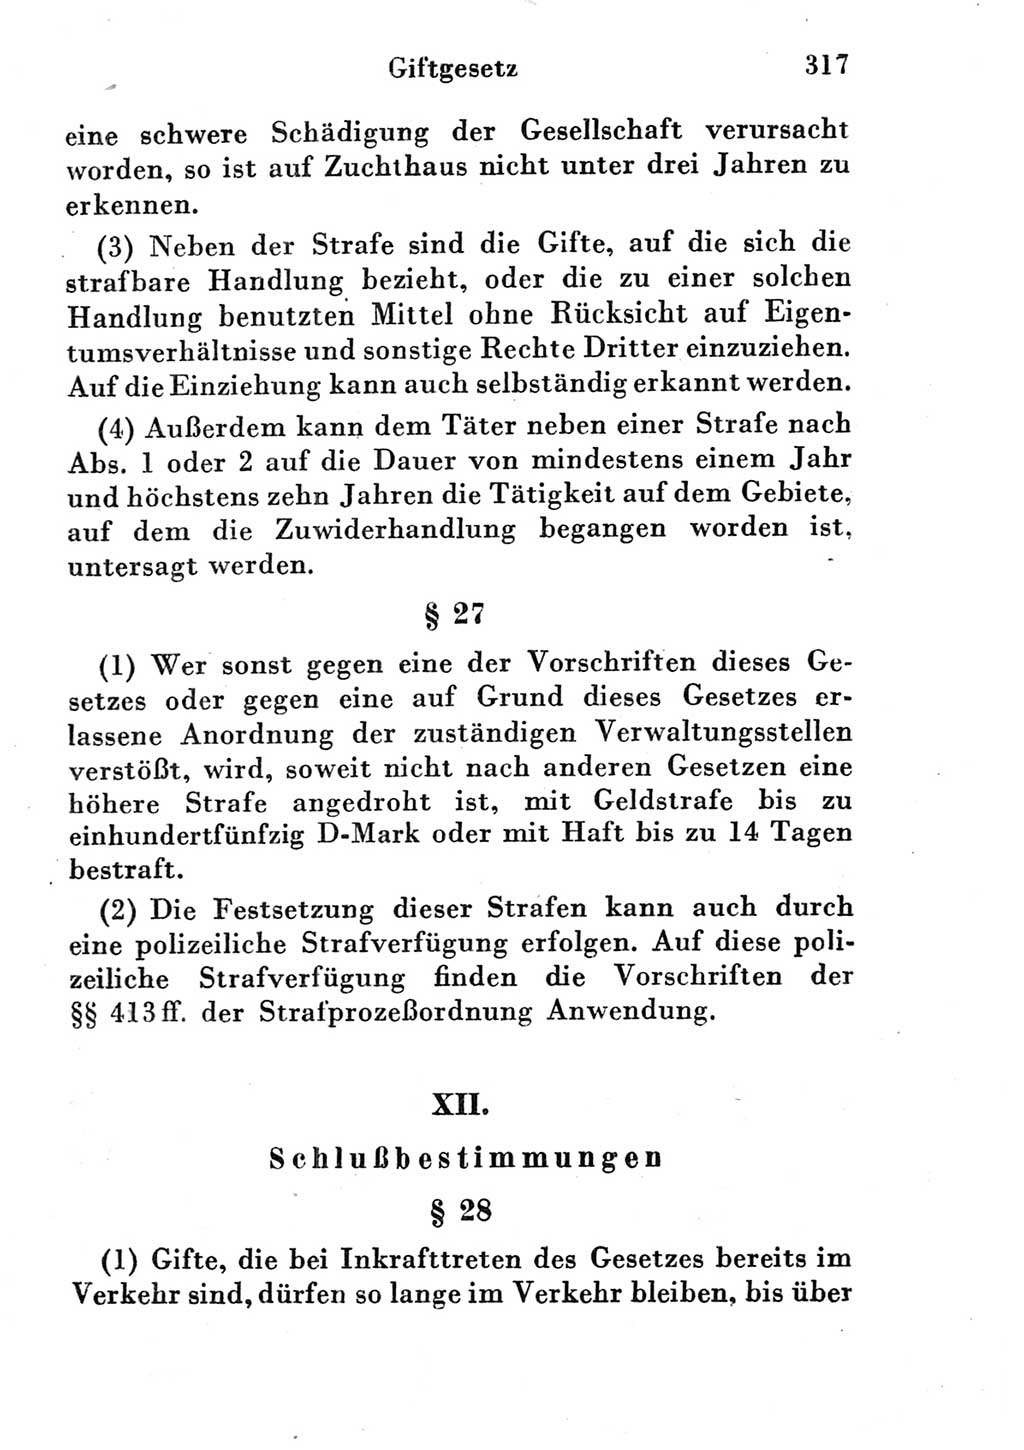 Strafgesetzbuch (StGB) und andere Strafgesetze [Deutsche Demokratische Republik (DDR)] 1951, Seite 317 (StGB Strafges. DDR 1951, S. 317)